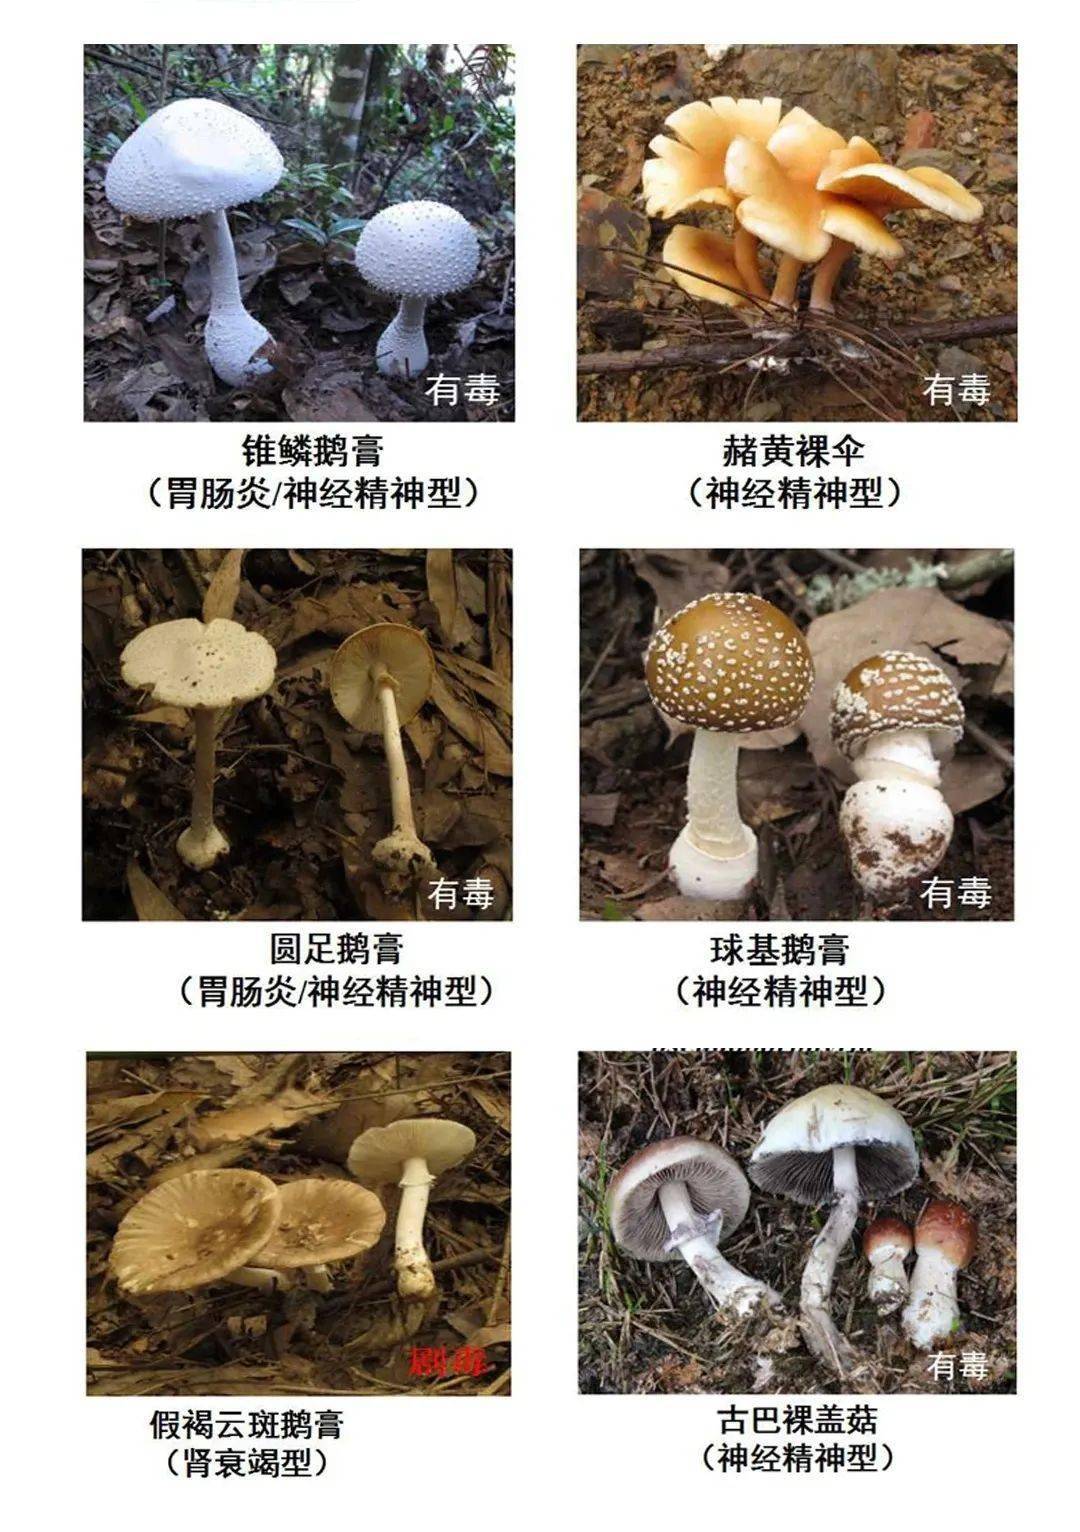 记住这些毒蘑菇的样子!切记不要采摘,买卖,食用